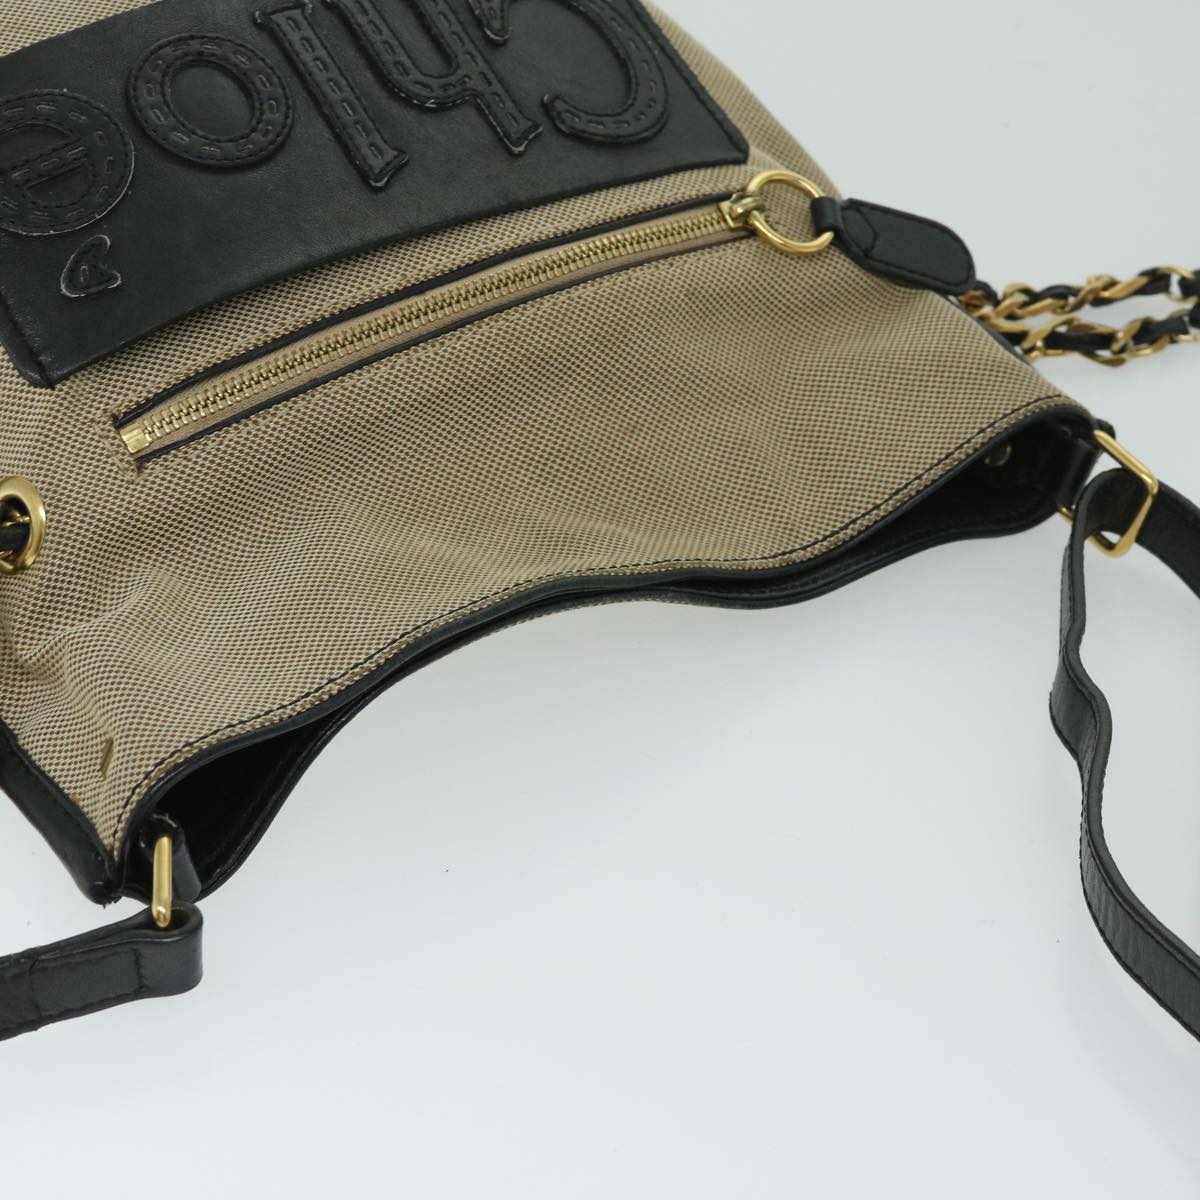 Chloe Harley Shoulder Bag Canvas Leather Beige Black Auth 67269